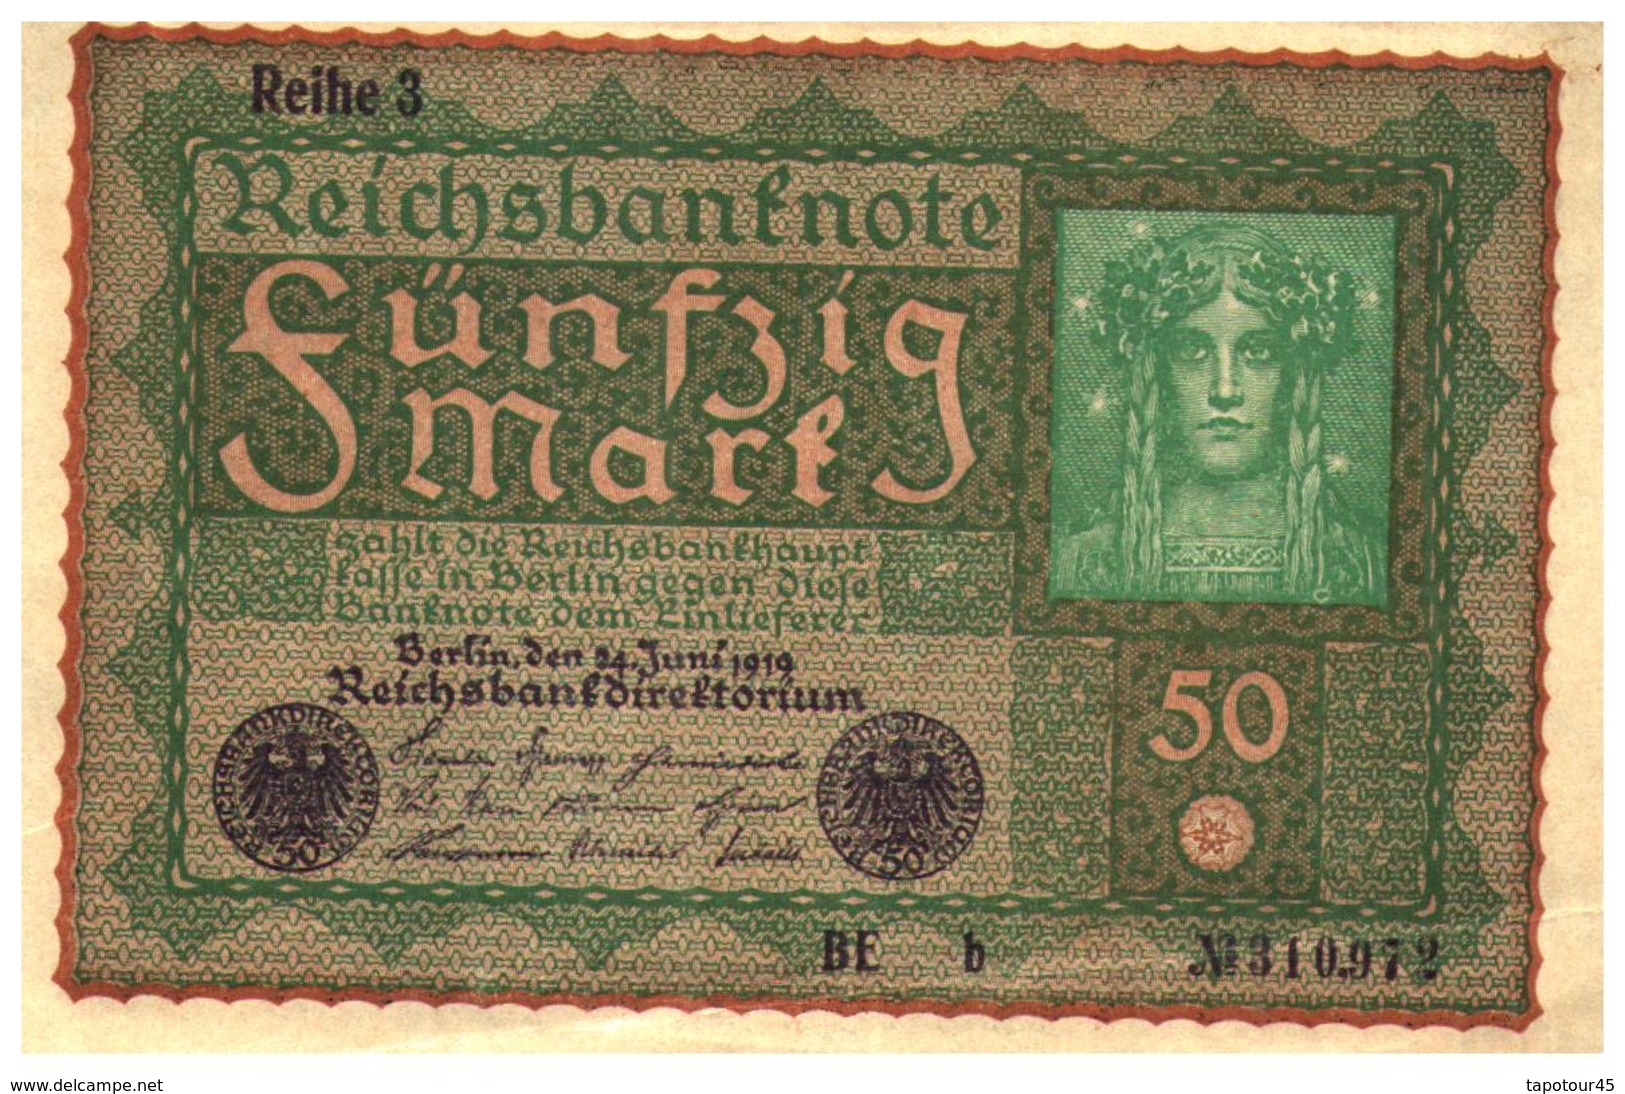 5 Billets  (NEUF) > Allemagne > Année 1919 > Valeur 50 Mark 2 Avec N=° A Suivre - 50 Mark